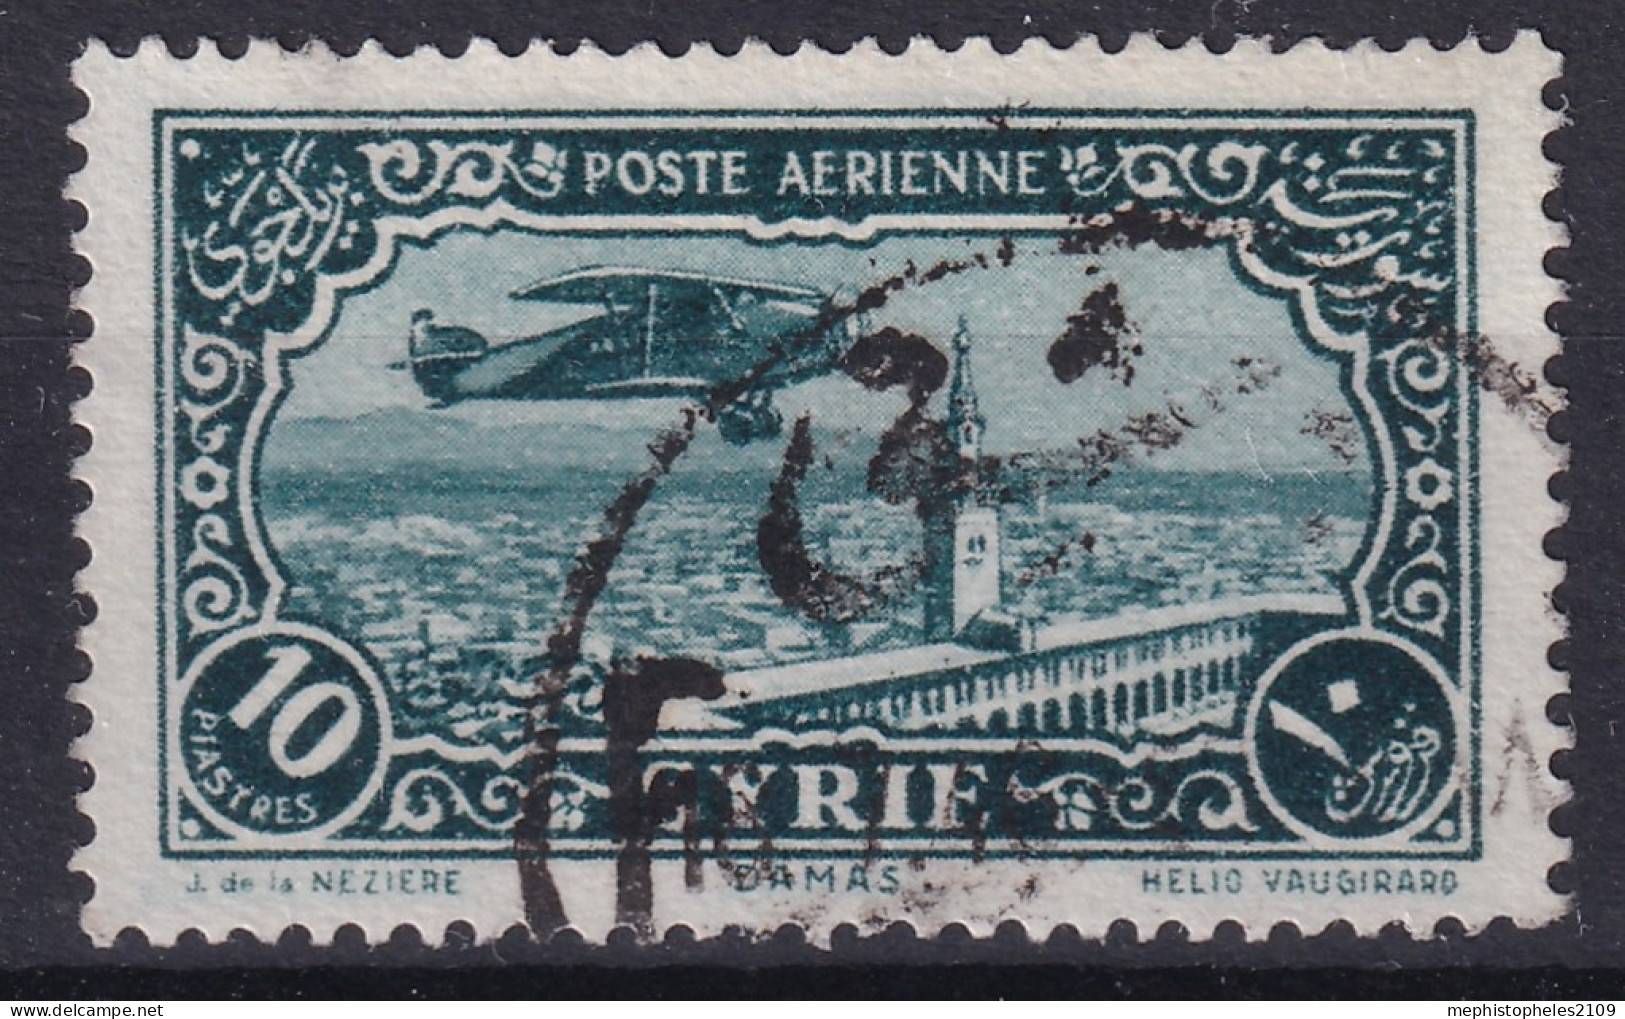 SYRIE 1931-33 - Canceled - YT 55 - Poste Aérienne - Airmail